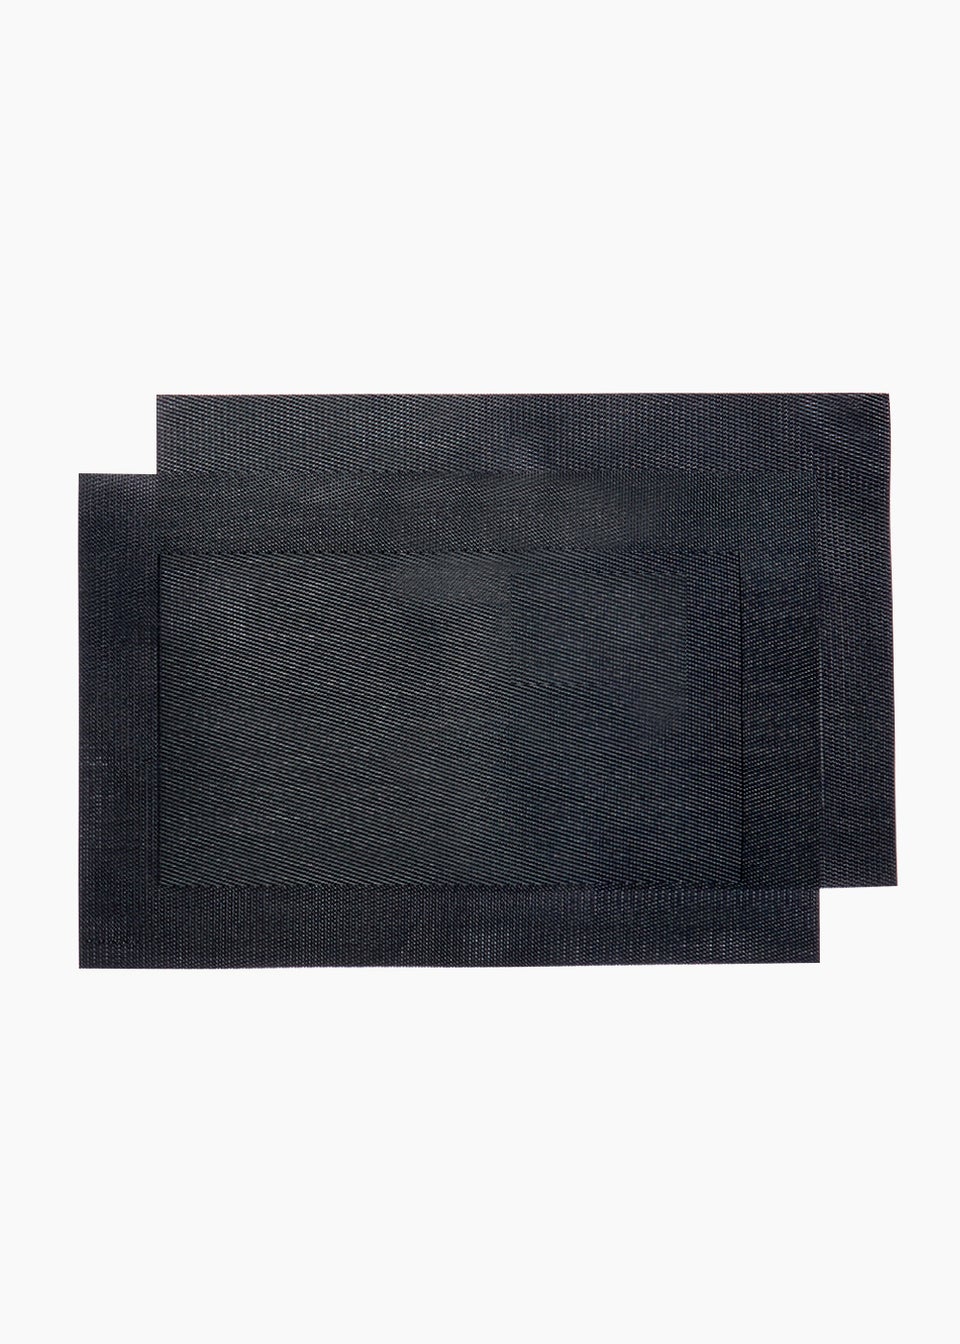 2 Pack Black Woven PVC Placemats (46cm x 30cm)